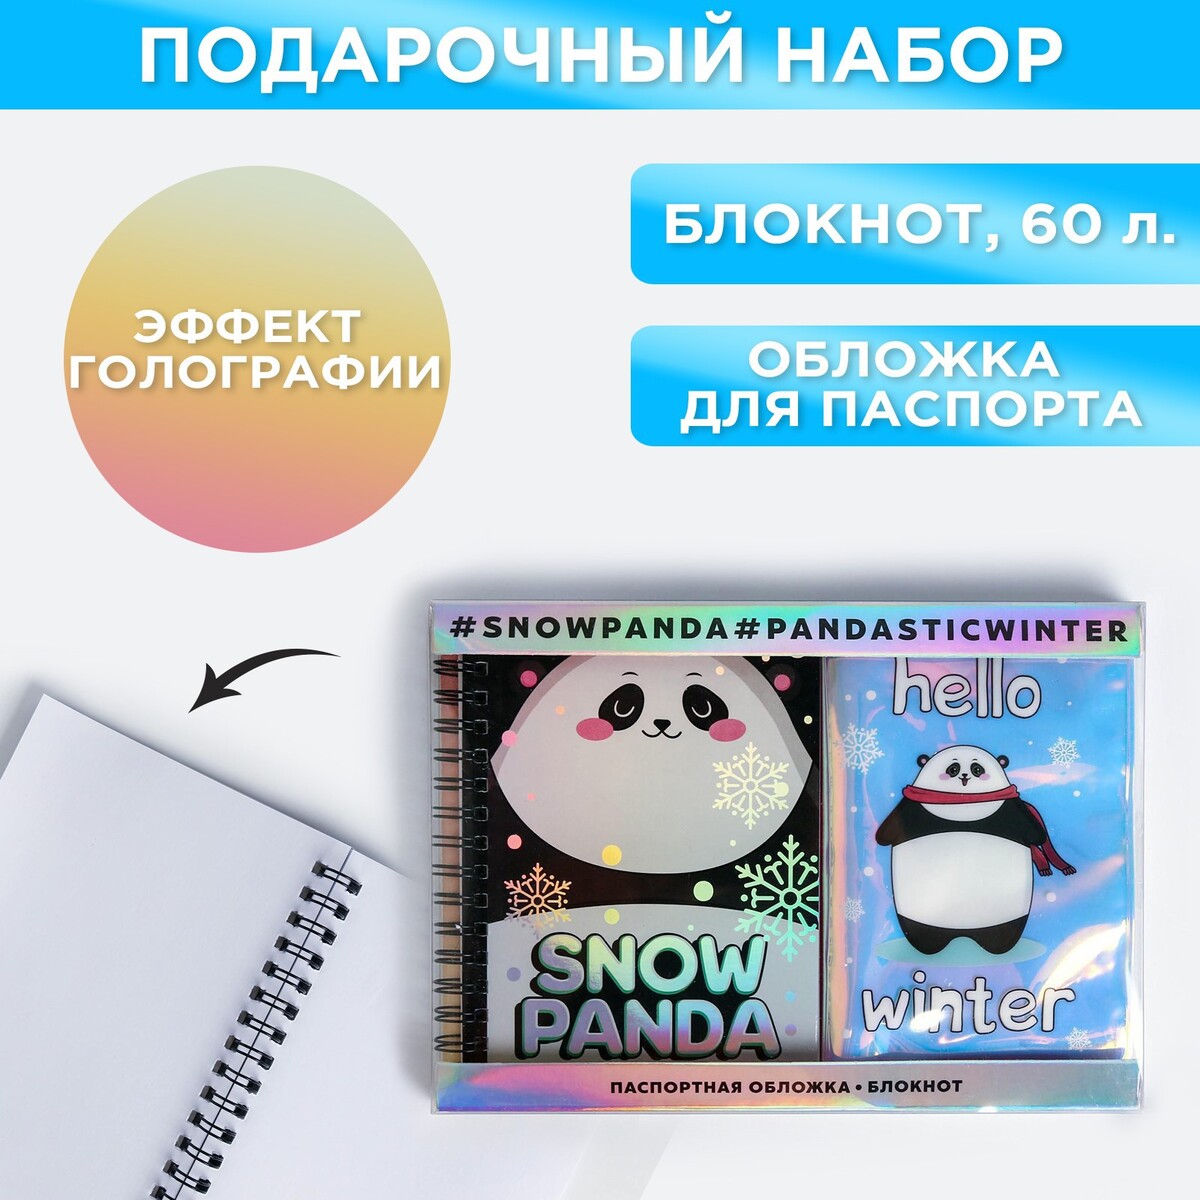 Подарочный набор: голографический блокнот и обложка snow panda подарочный набор голографический блокнот и обложка snow panda